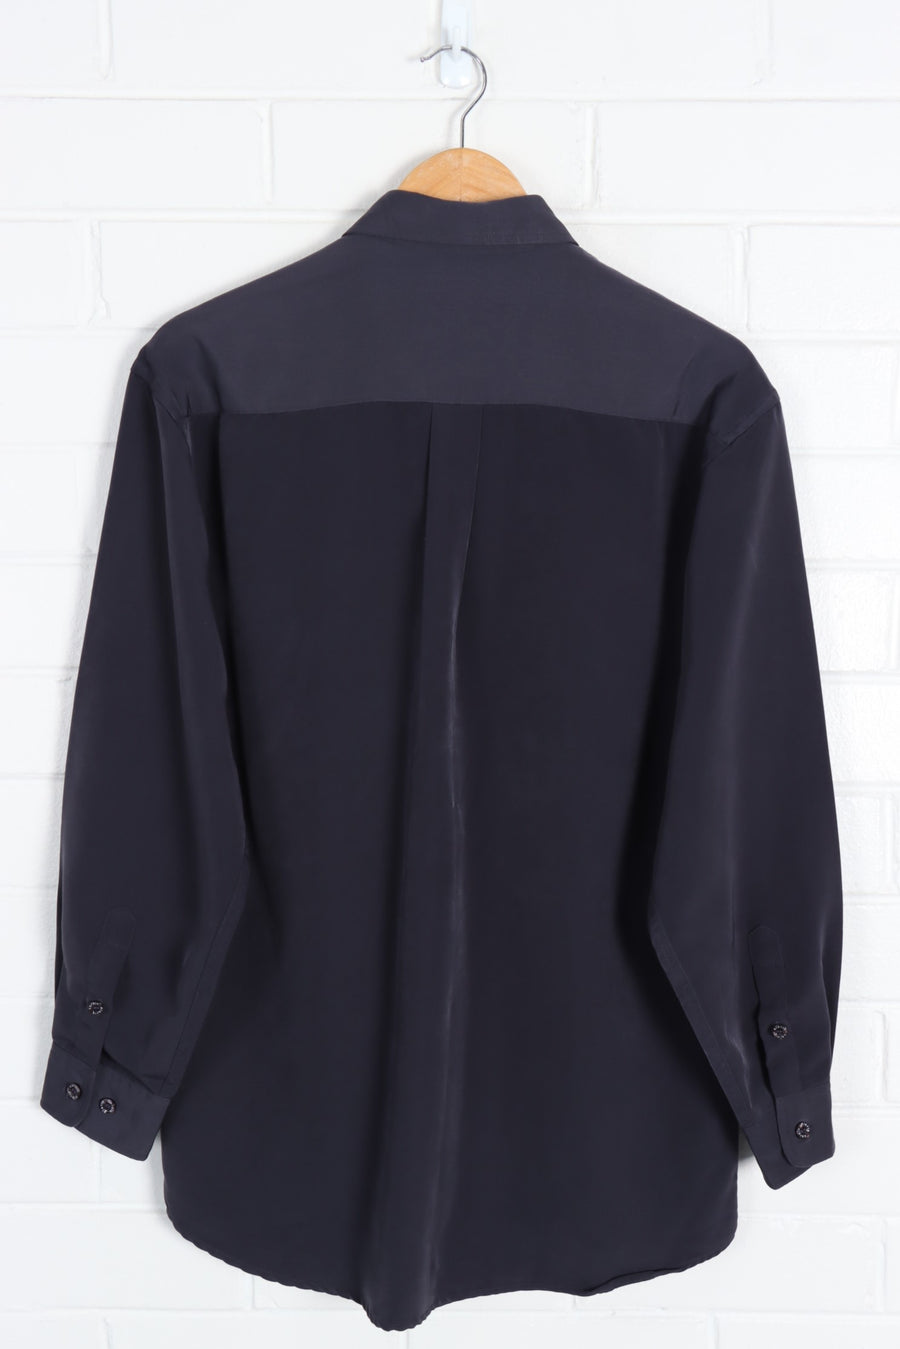 PIERRE CARDIN Espace Black Long Sleeve Shirt (M) - Vintage Sole Melbourne